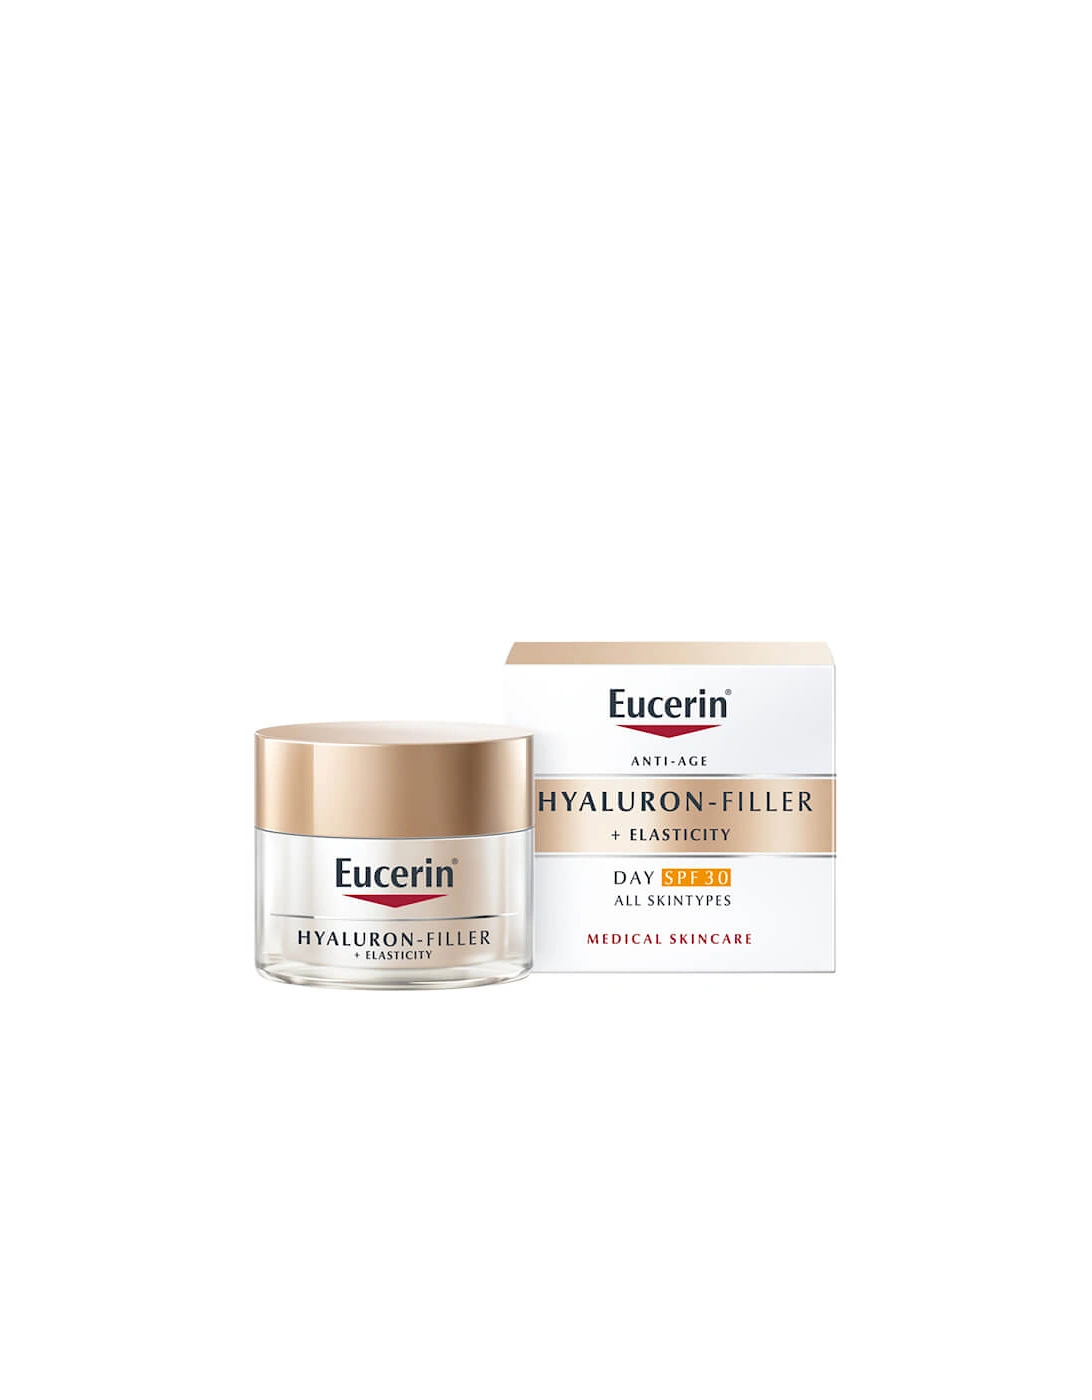 Hyaluron-Filler Elasticity Day Cream SPF30 50ml - Eucerin, 2 of 1